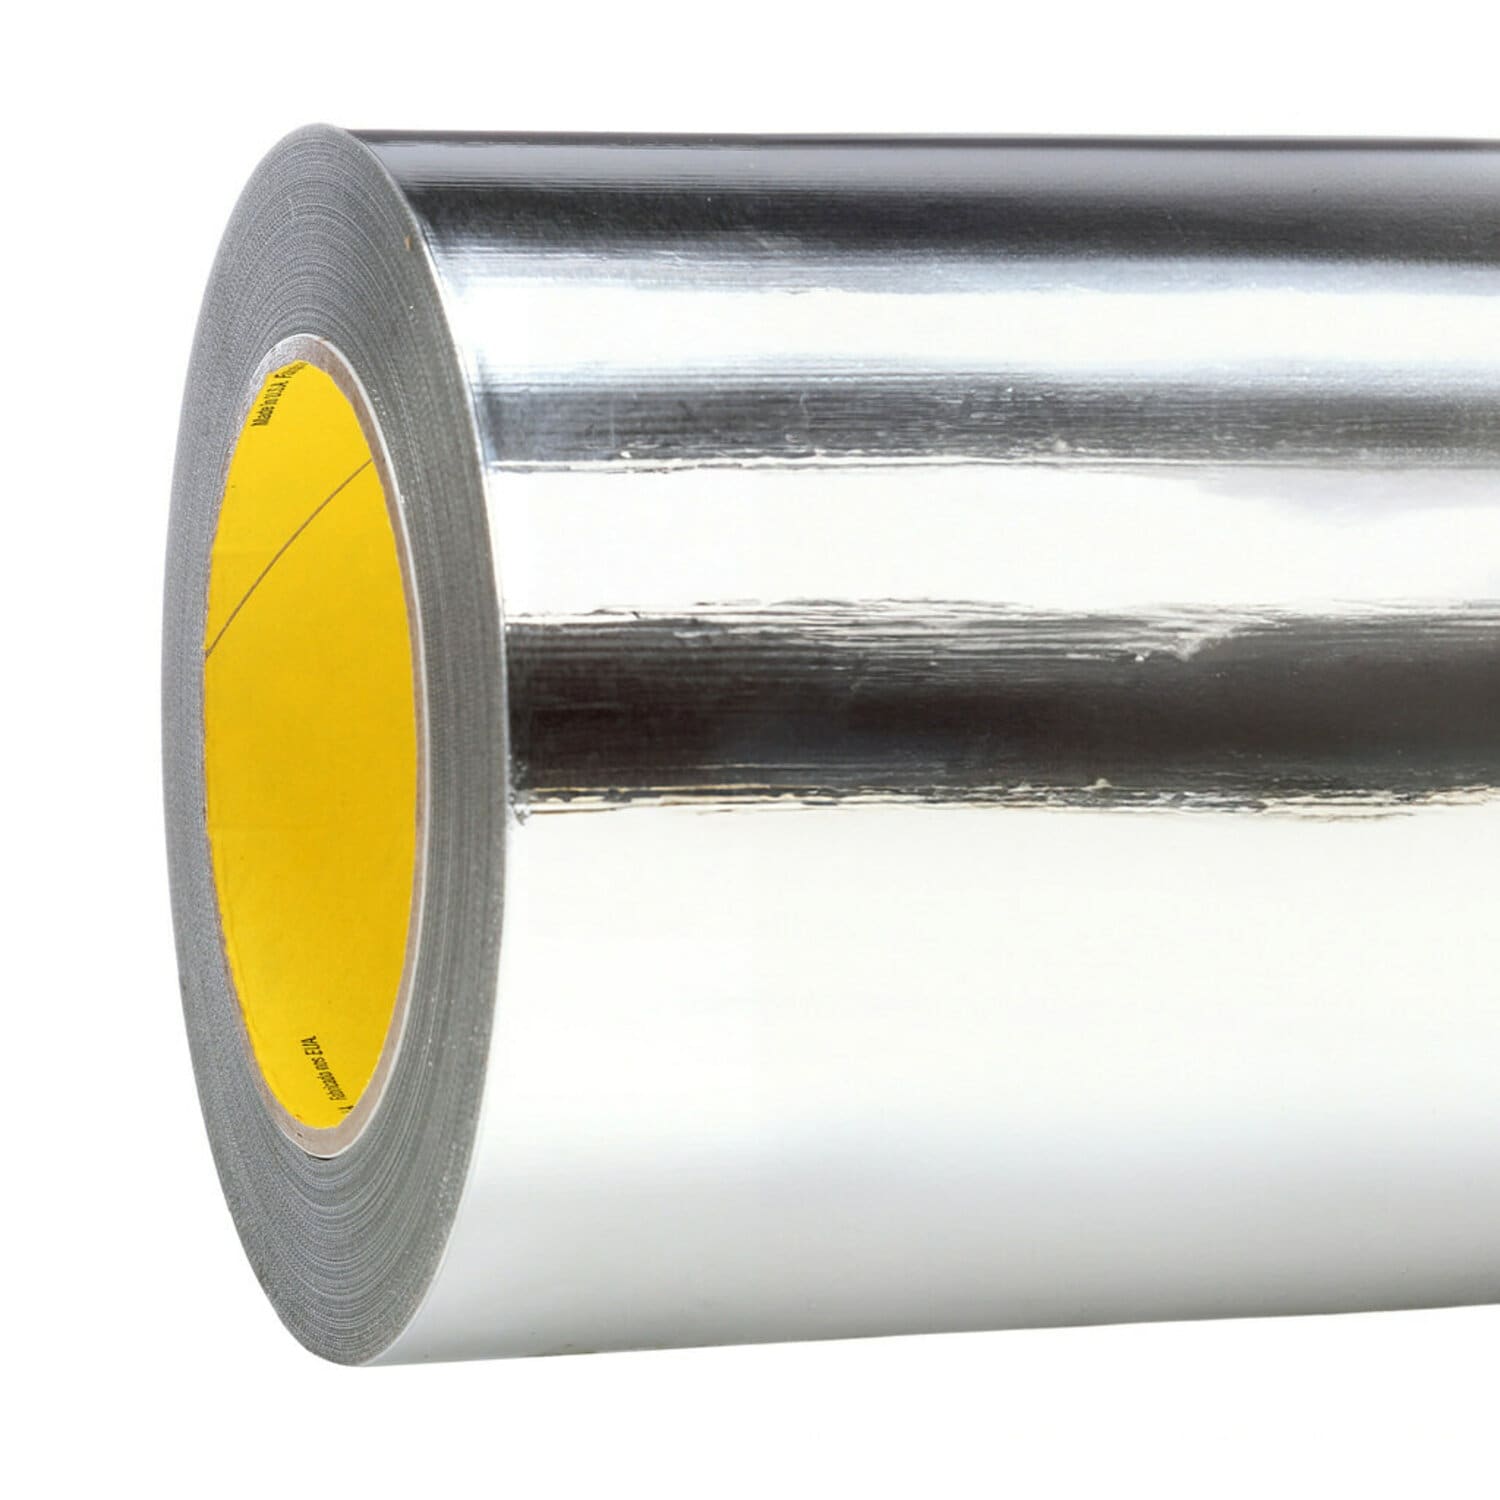 7100107010 - 3M Aluminum Foil Tape 427, Silver, 12 in x 60 yd, 4.6 mil, 1 roll per
case